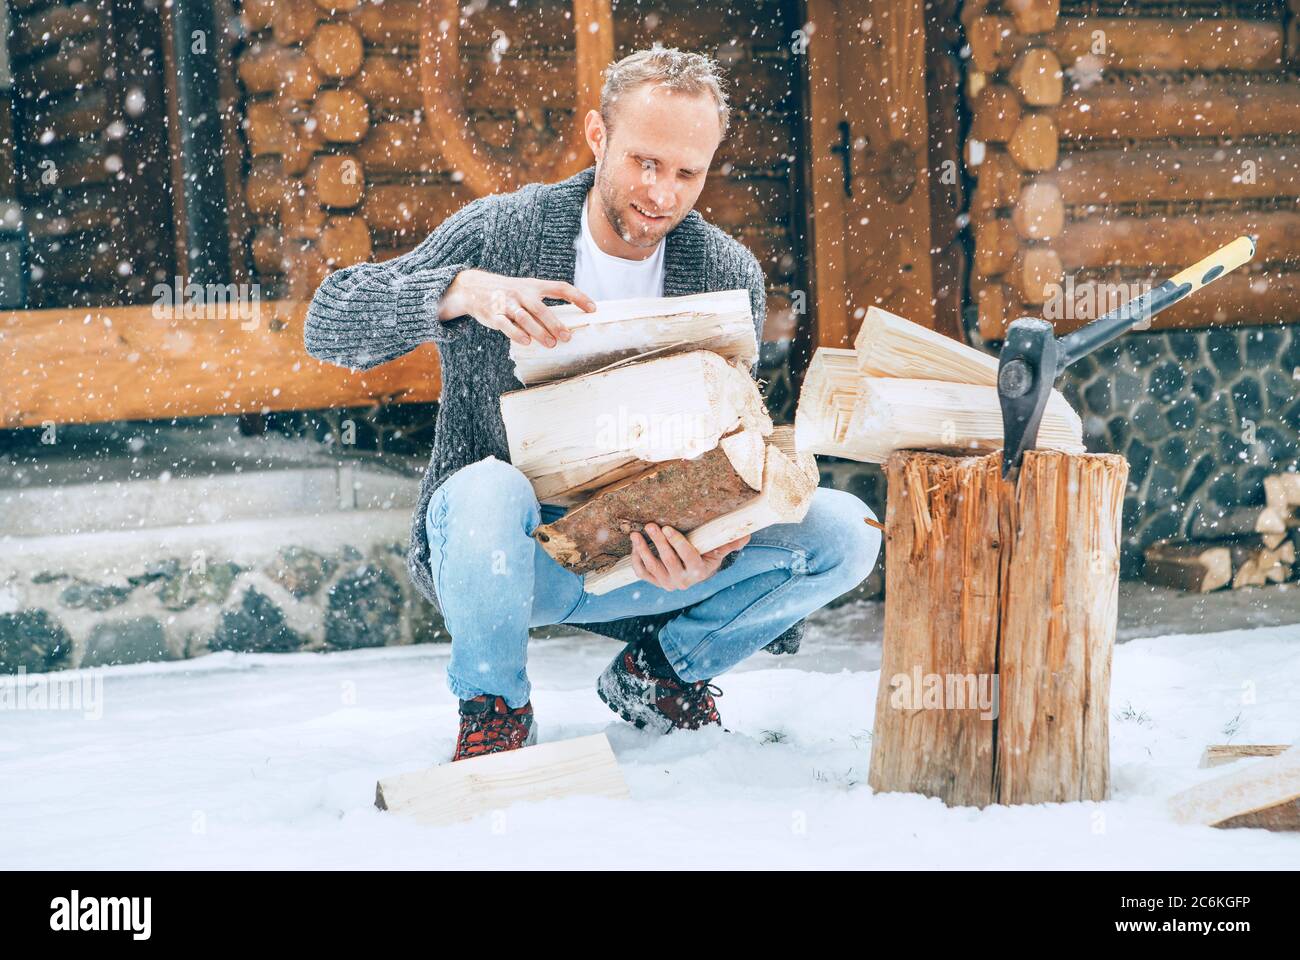 Mann sammelt gehacktes Brennholz auf verschneiten Hof für ein Haus Kamin mit schweren Schneeflocken Hintergrund. Winter Landurlaub Konzept Bild Stockfoto